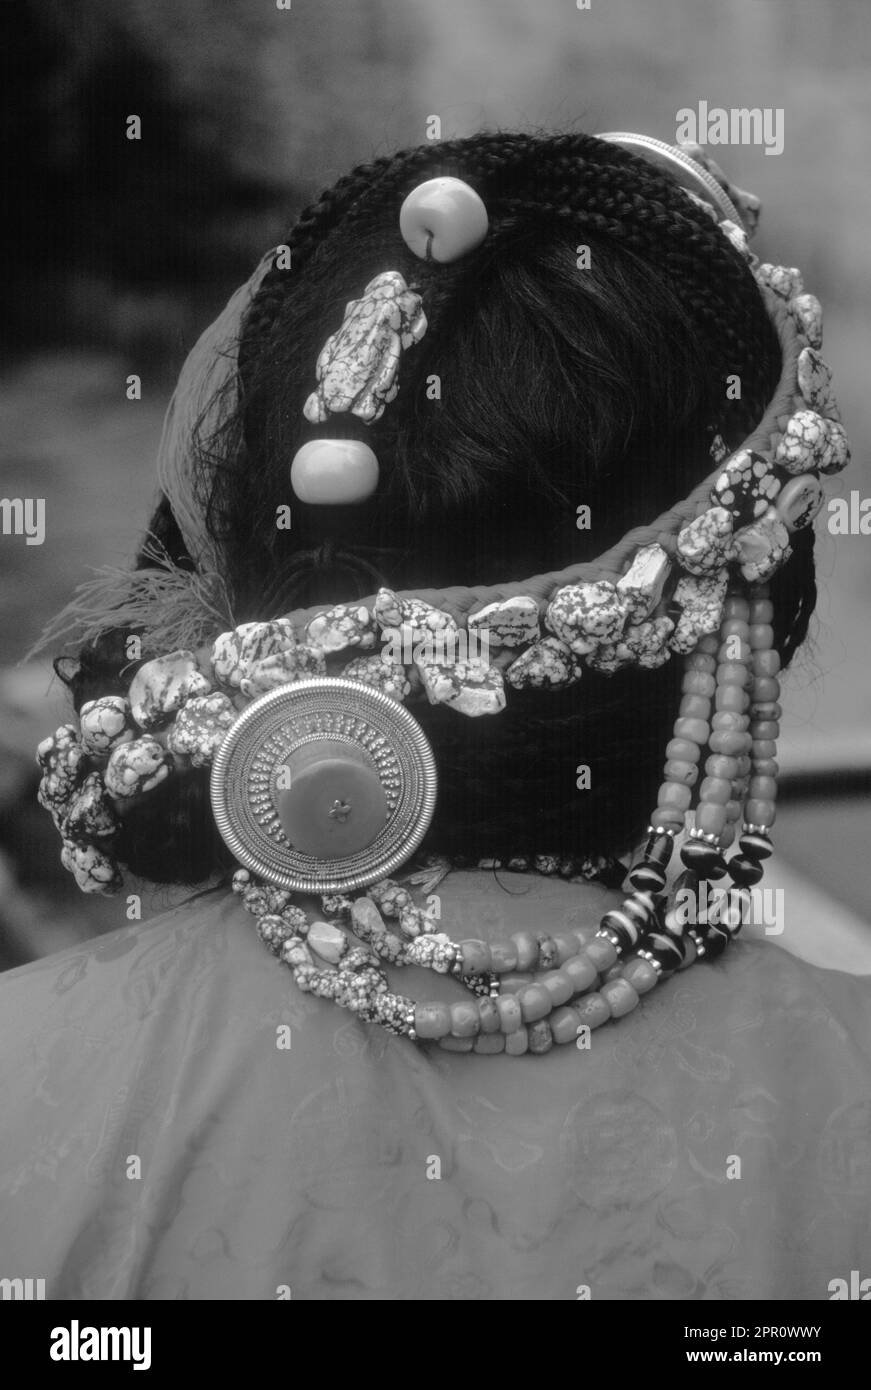 TURQUOISE, CORAIL et OR décorent les cheveux de cette FEMME TIBÉTAINE - LHASSA, TIBET Banque D'Images